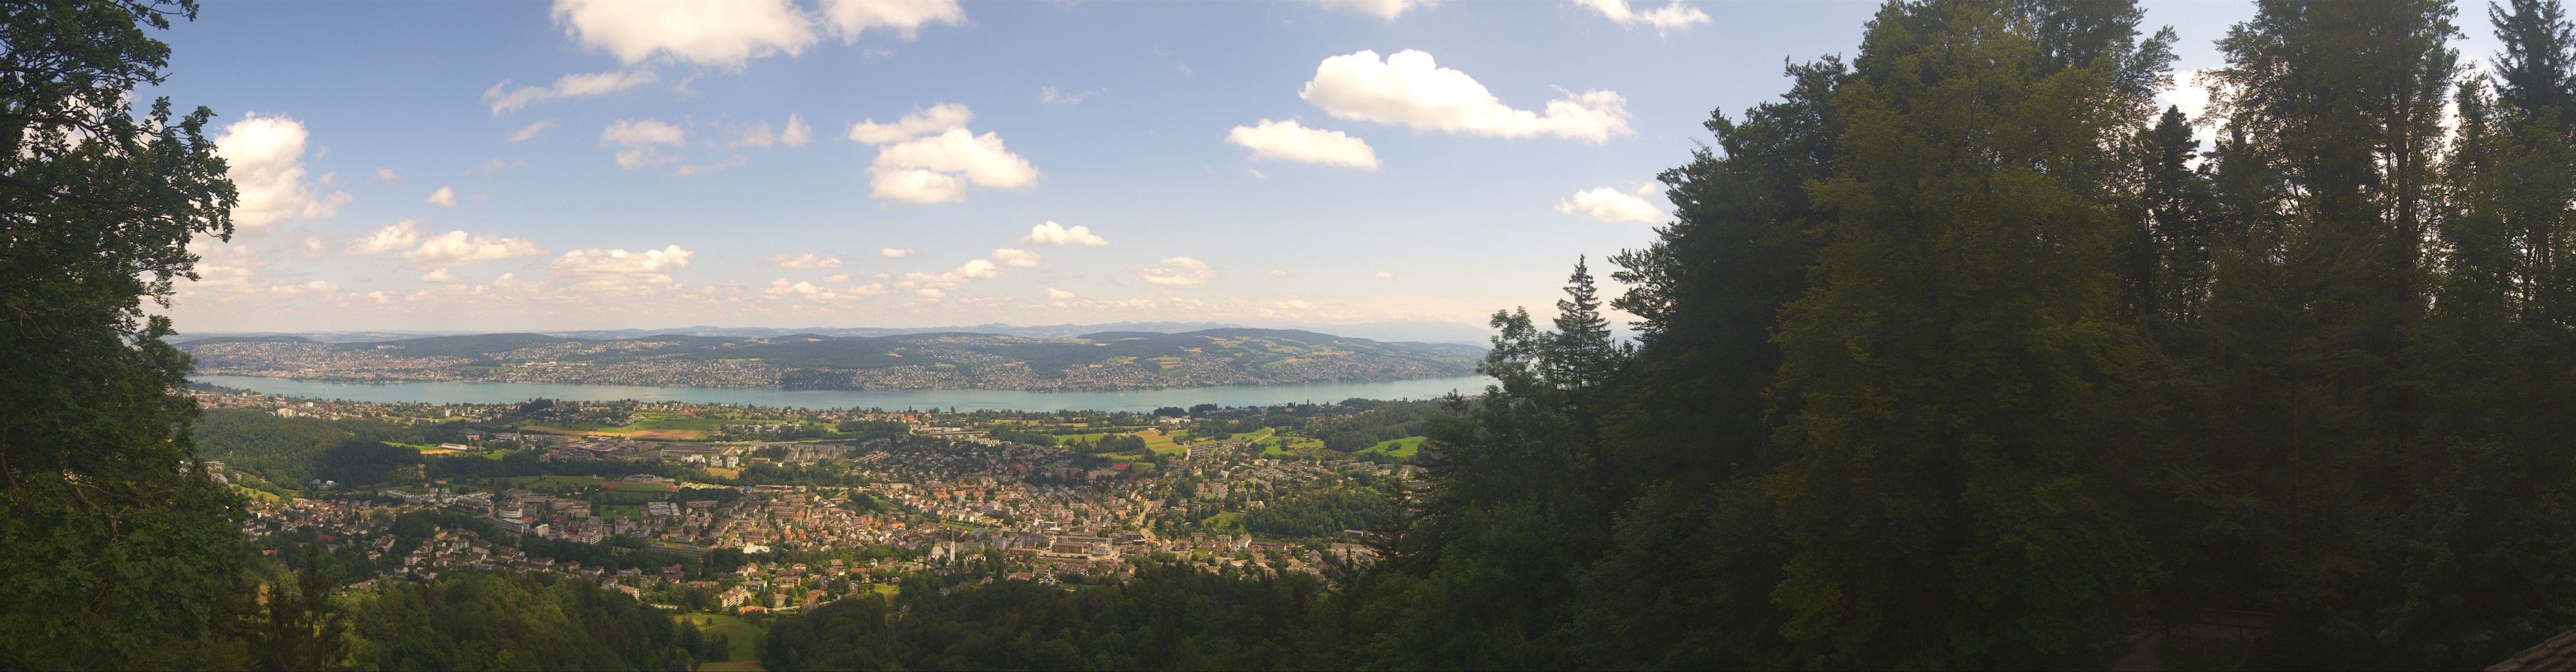 Stallikon: Adliswil - Zollikon - Küsnacht - Erlenbach - Zürich - Herrliberg - Horgen - Zürichsee